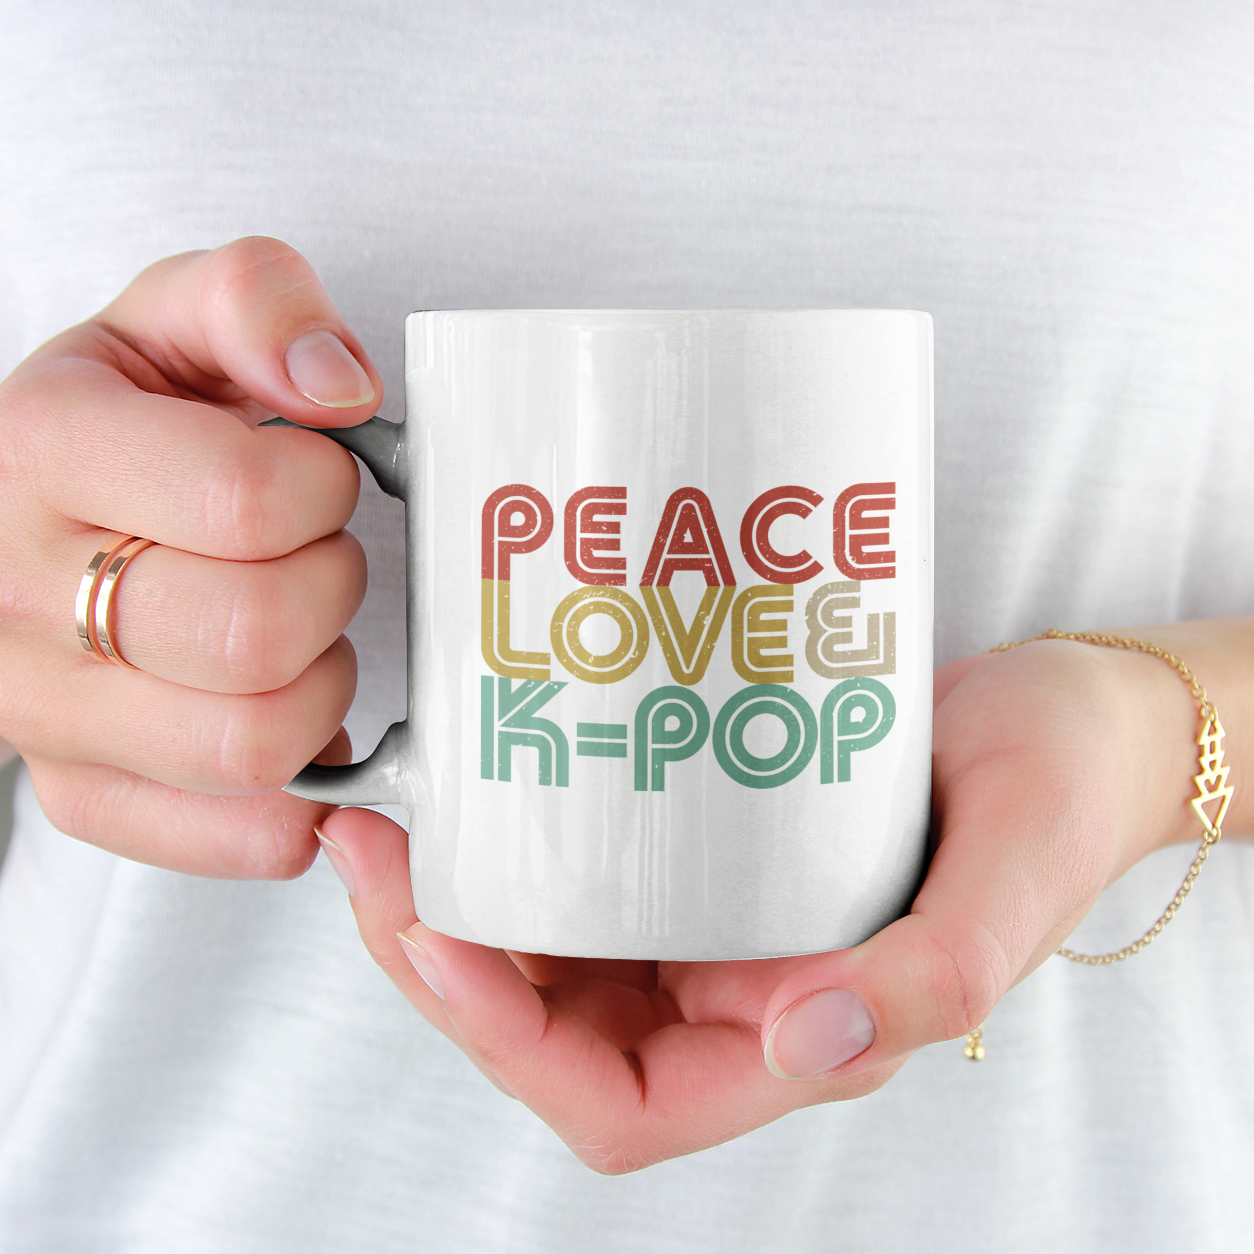 PEACE LOVE & K-POP- Coffee/Tea Mug - Hot Like Kimchi